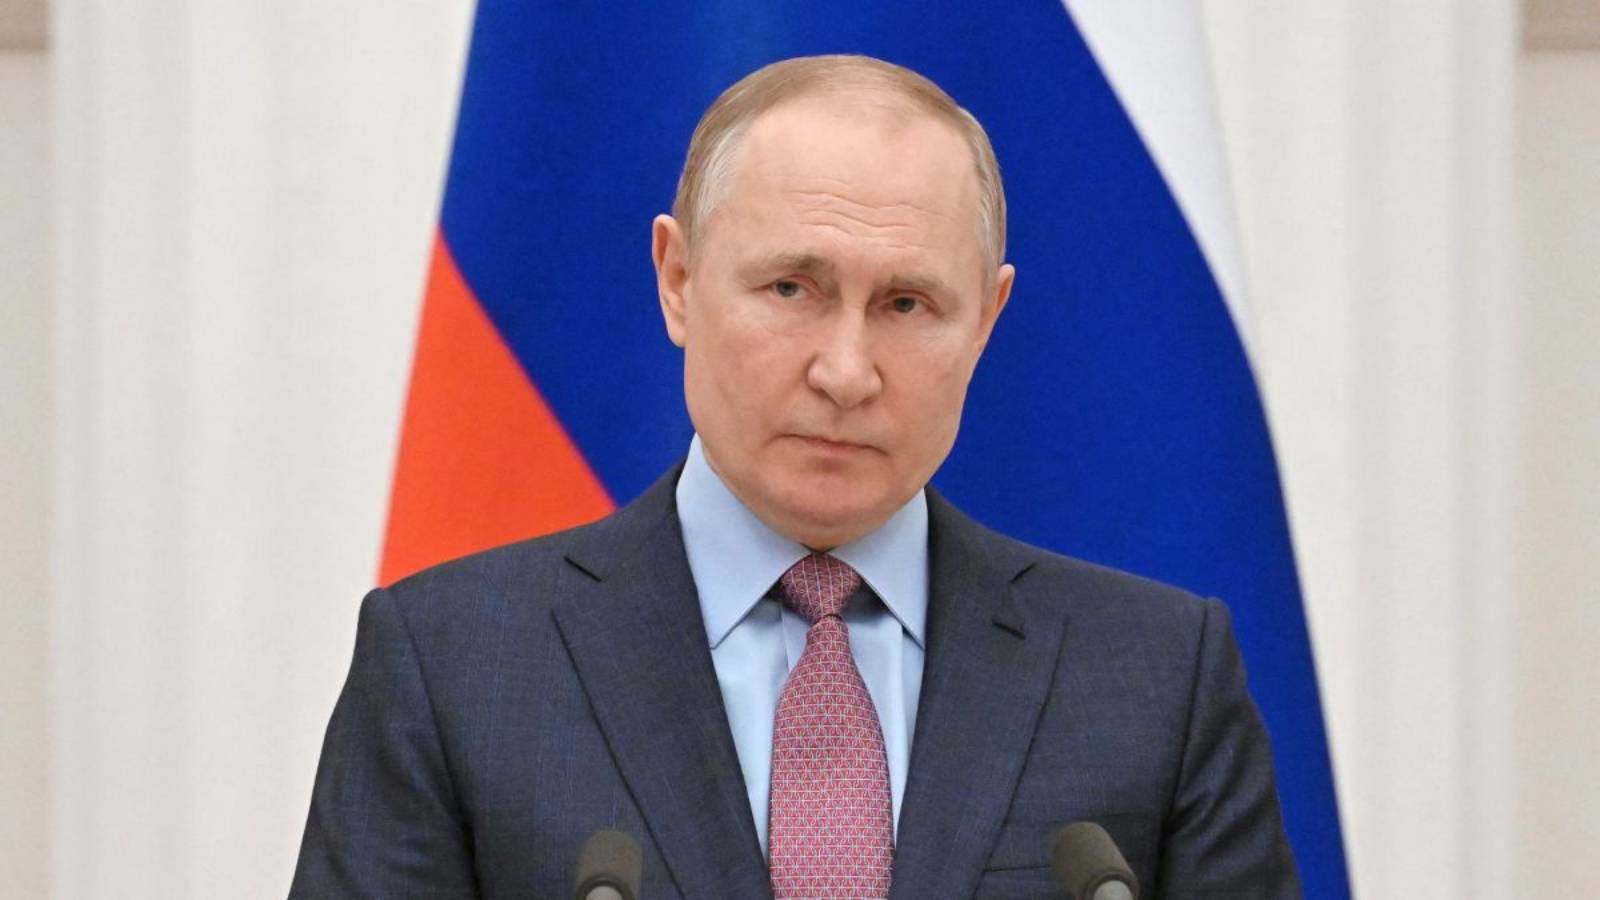 Les sanctions de Vladimir Poutine génèrent des problèmes colossaux pour l’industrie informatique